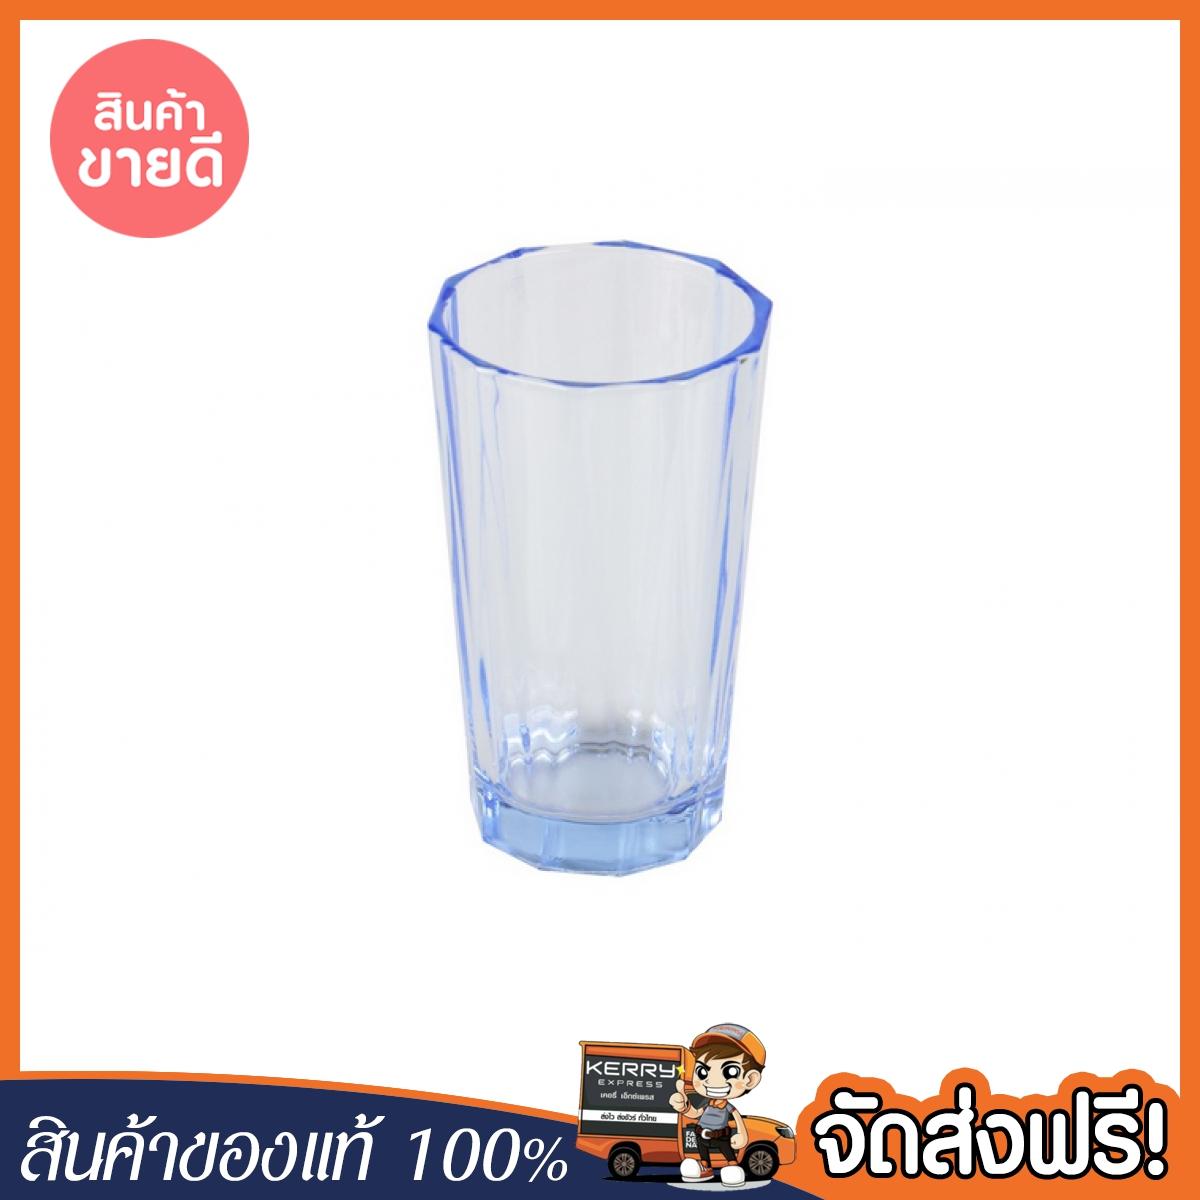 [ของแท้ จัดส่งฟรี] TUMBLE GLASS GLASS BLUE แก้วน้ำ 9.5oz แพ็ค 4 ใบ RIPPLE BEAM ฟ้า ของแท้ จำนวนจำกัด สินค้าพร้อมจัดส่ง